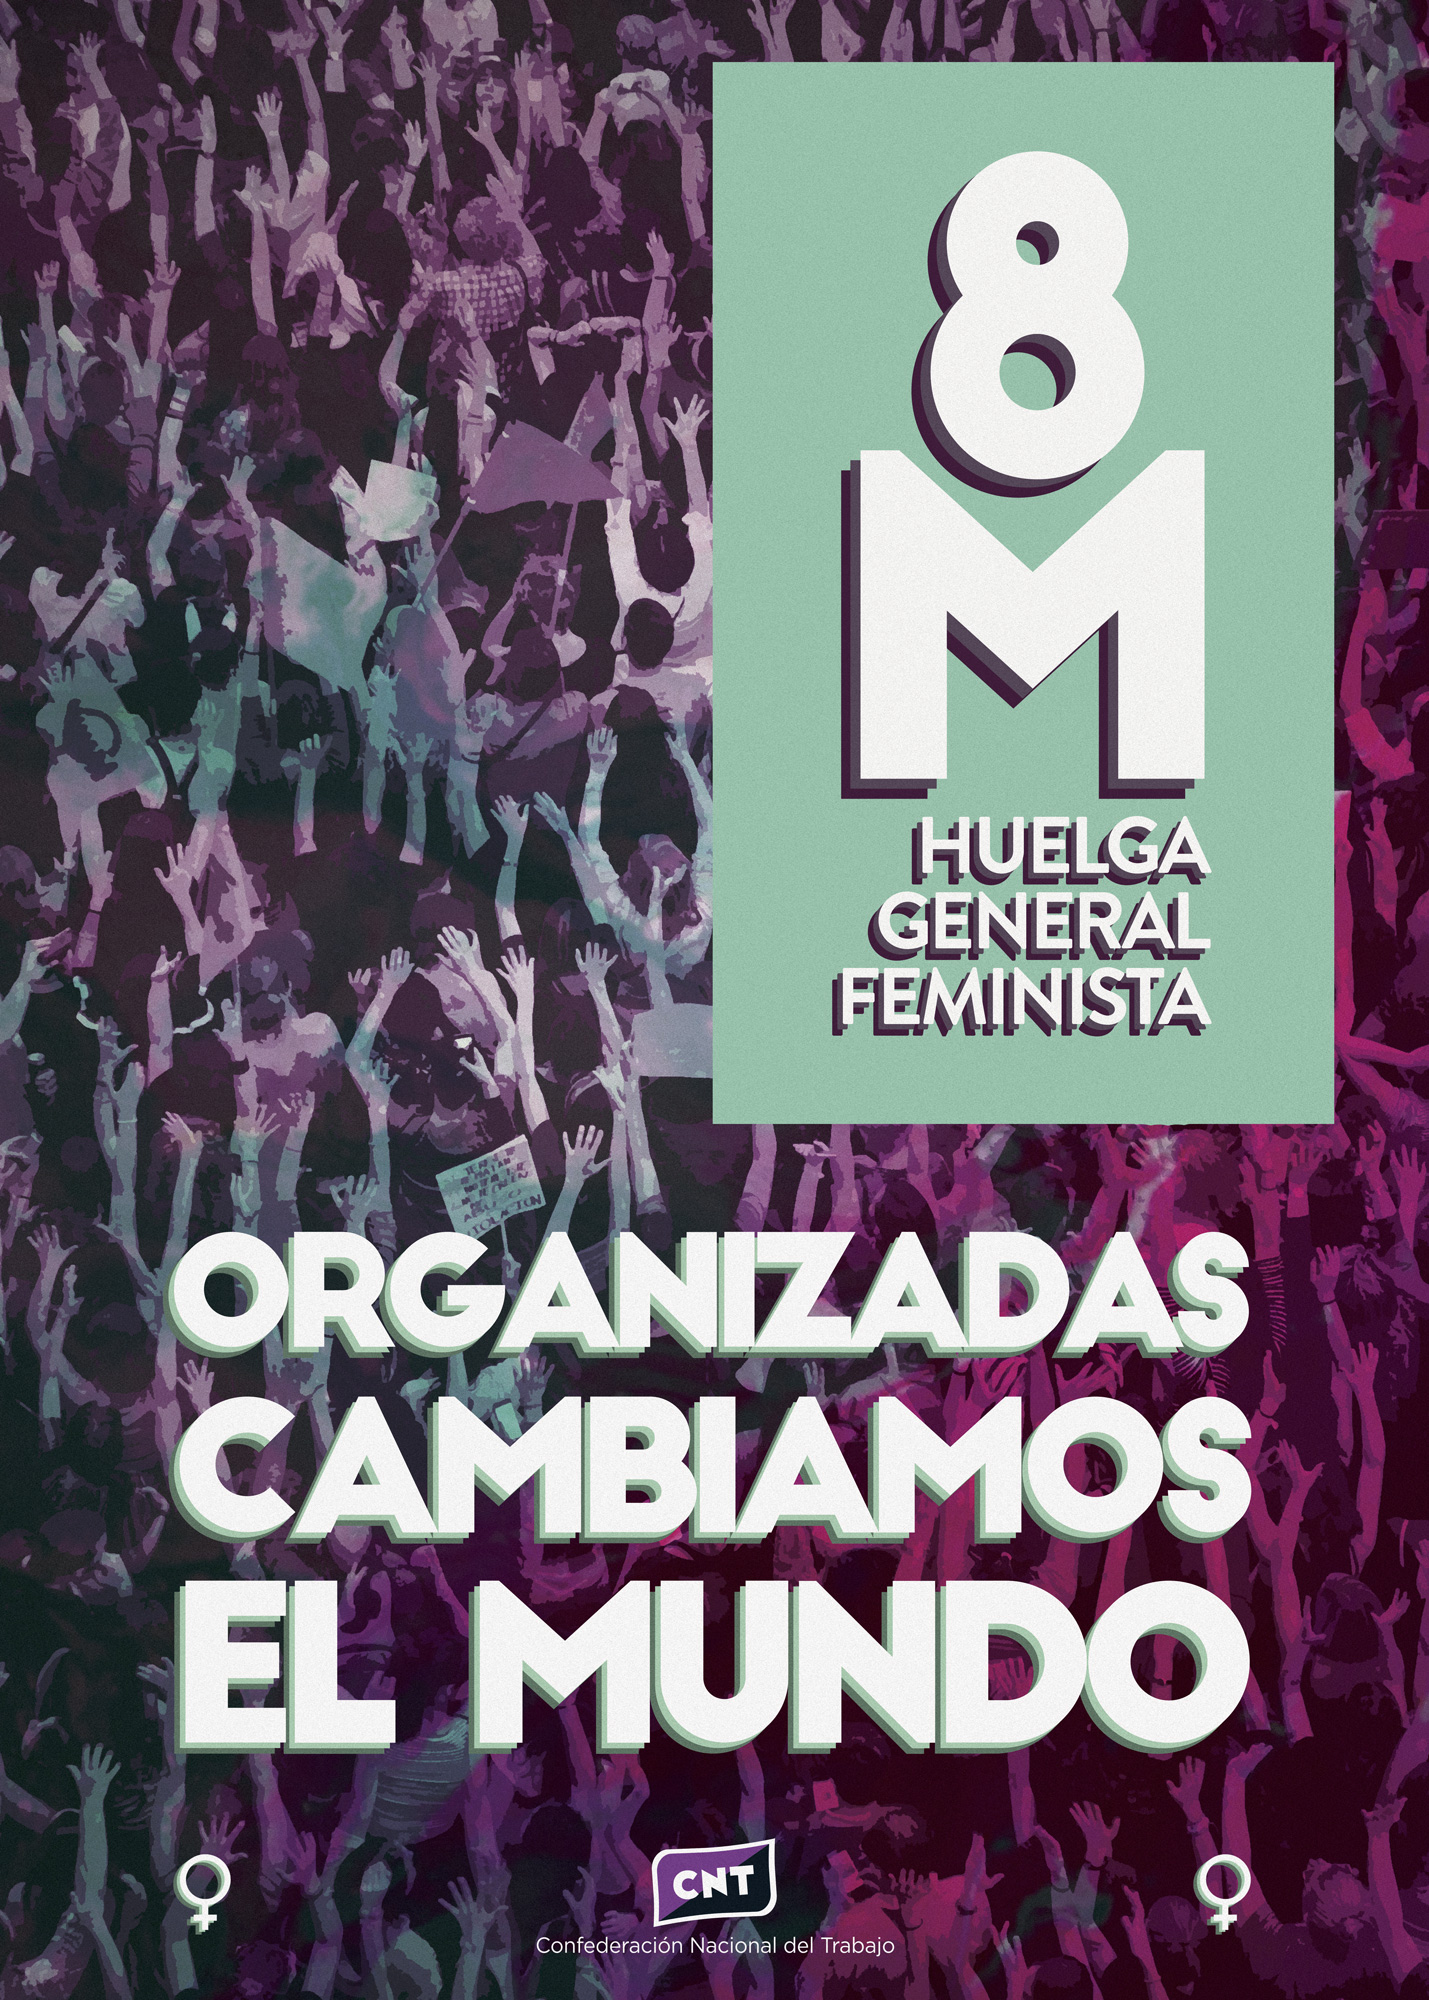 CNT convoca formalmente huelga general feminista para el próximo 8 de marzo